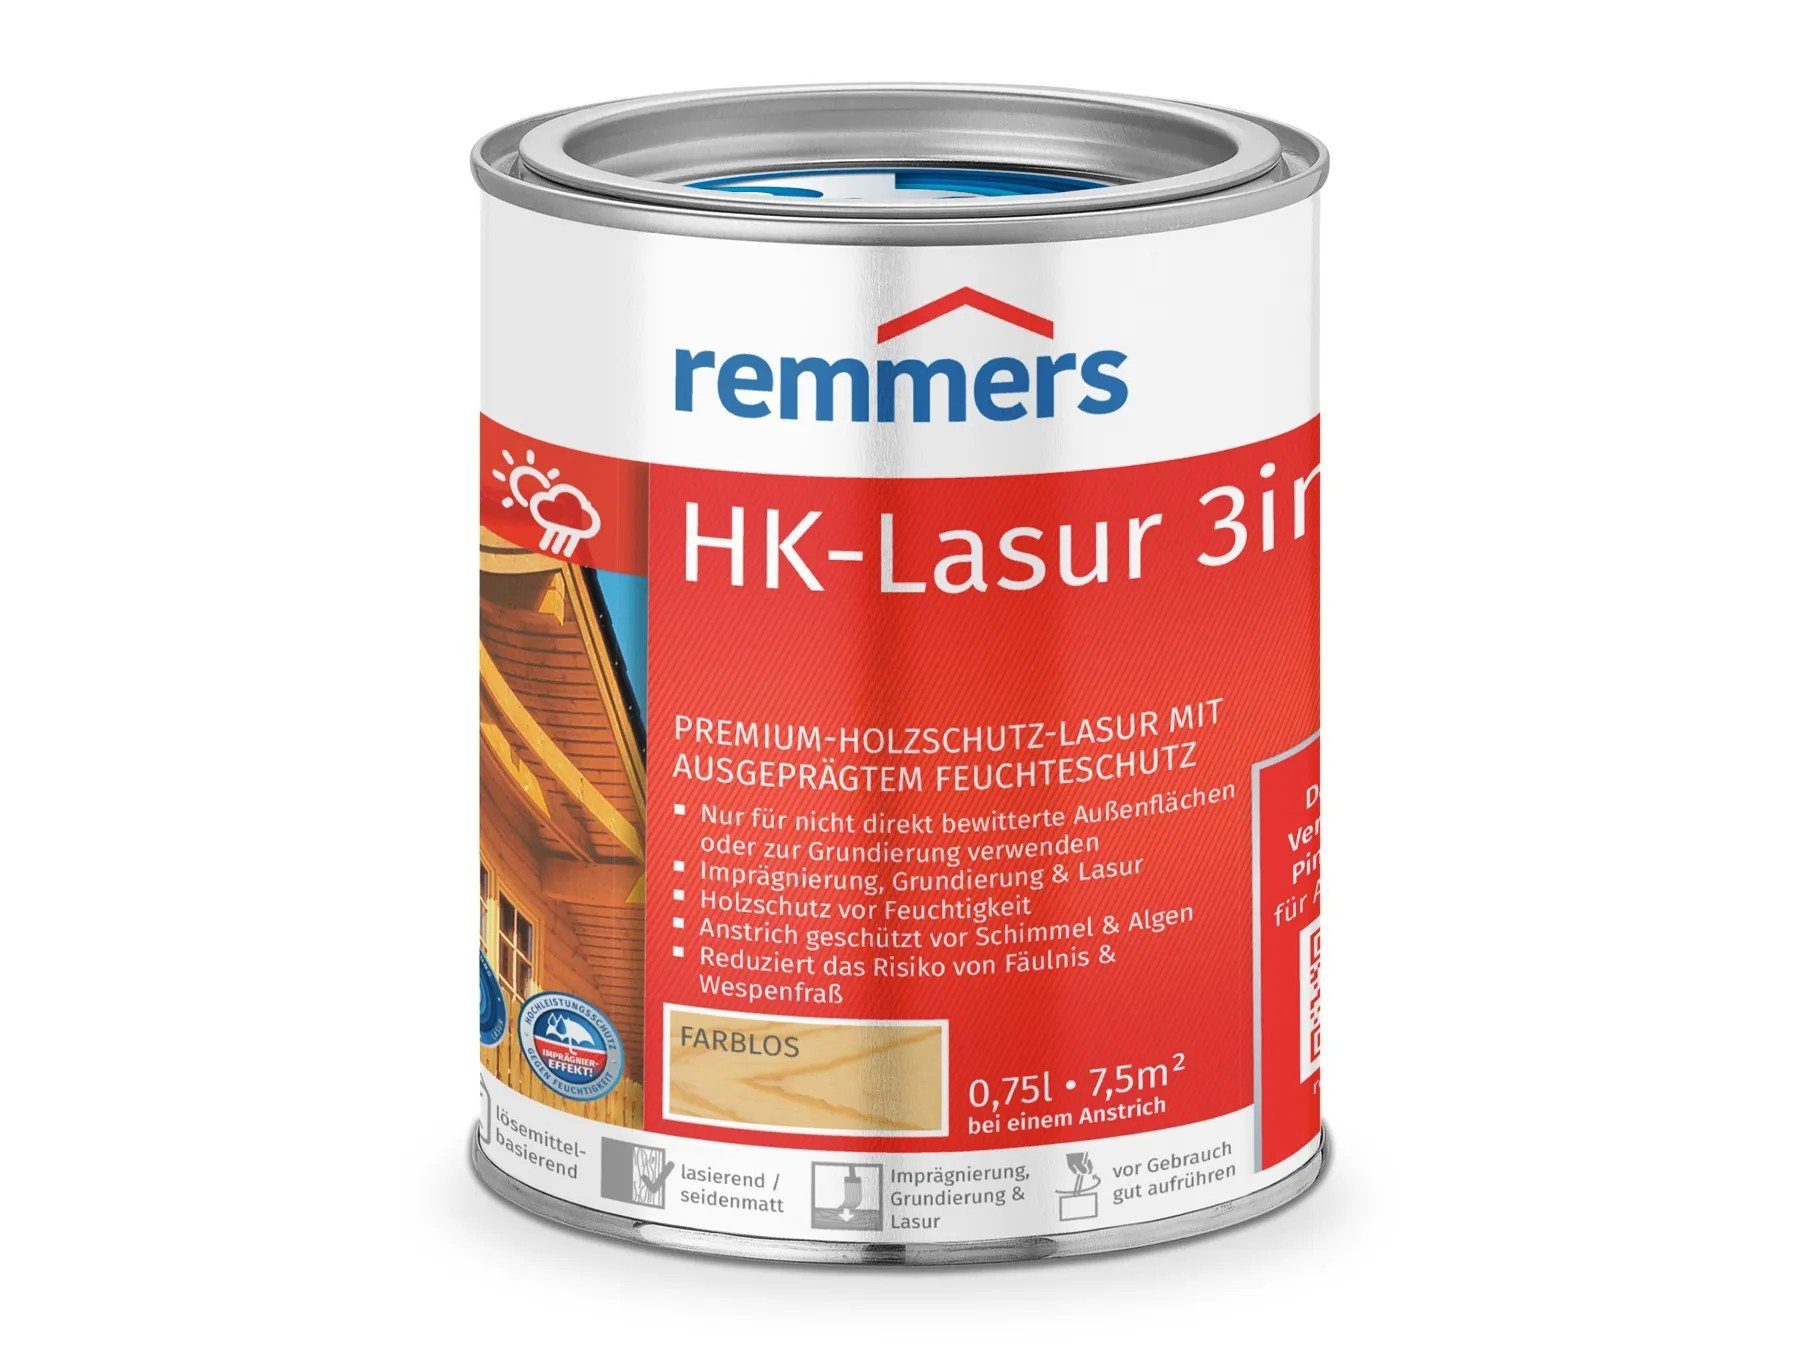 Holzschutzlasur 3in1 farblos HK-Lasur Remmers